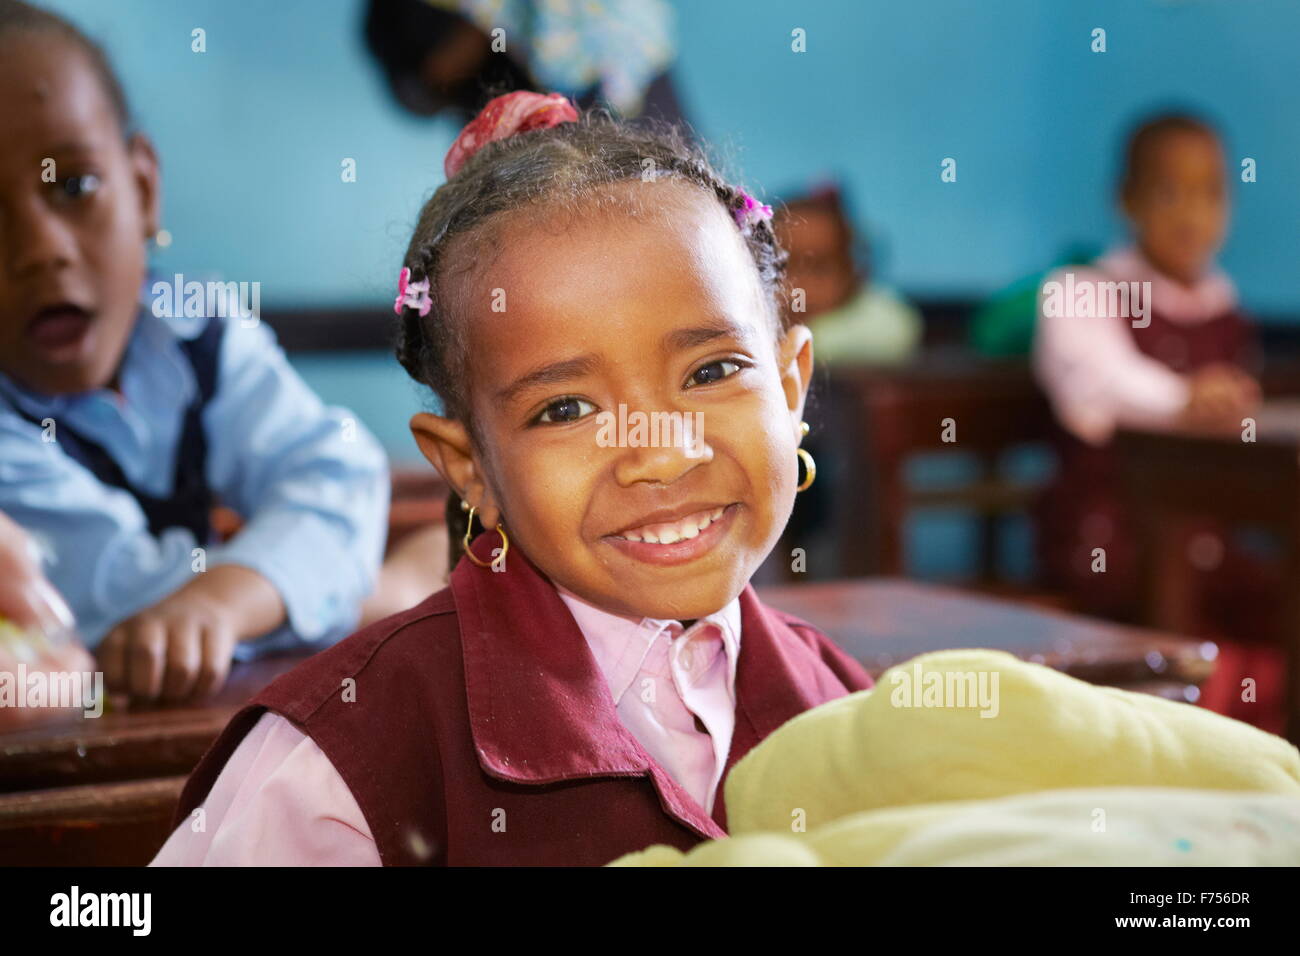 Egyptian child - nubian girl smiling, children in the school, portrait, Egypt Stock Photo